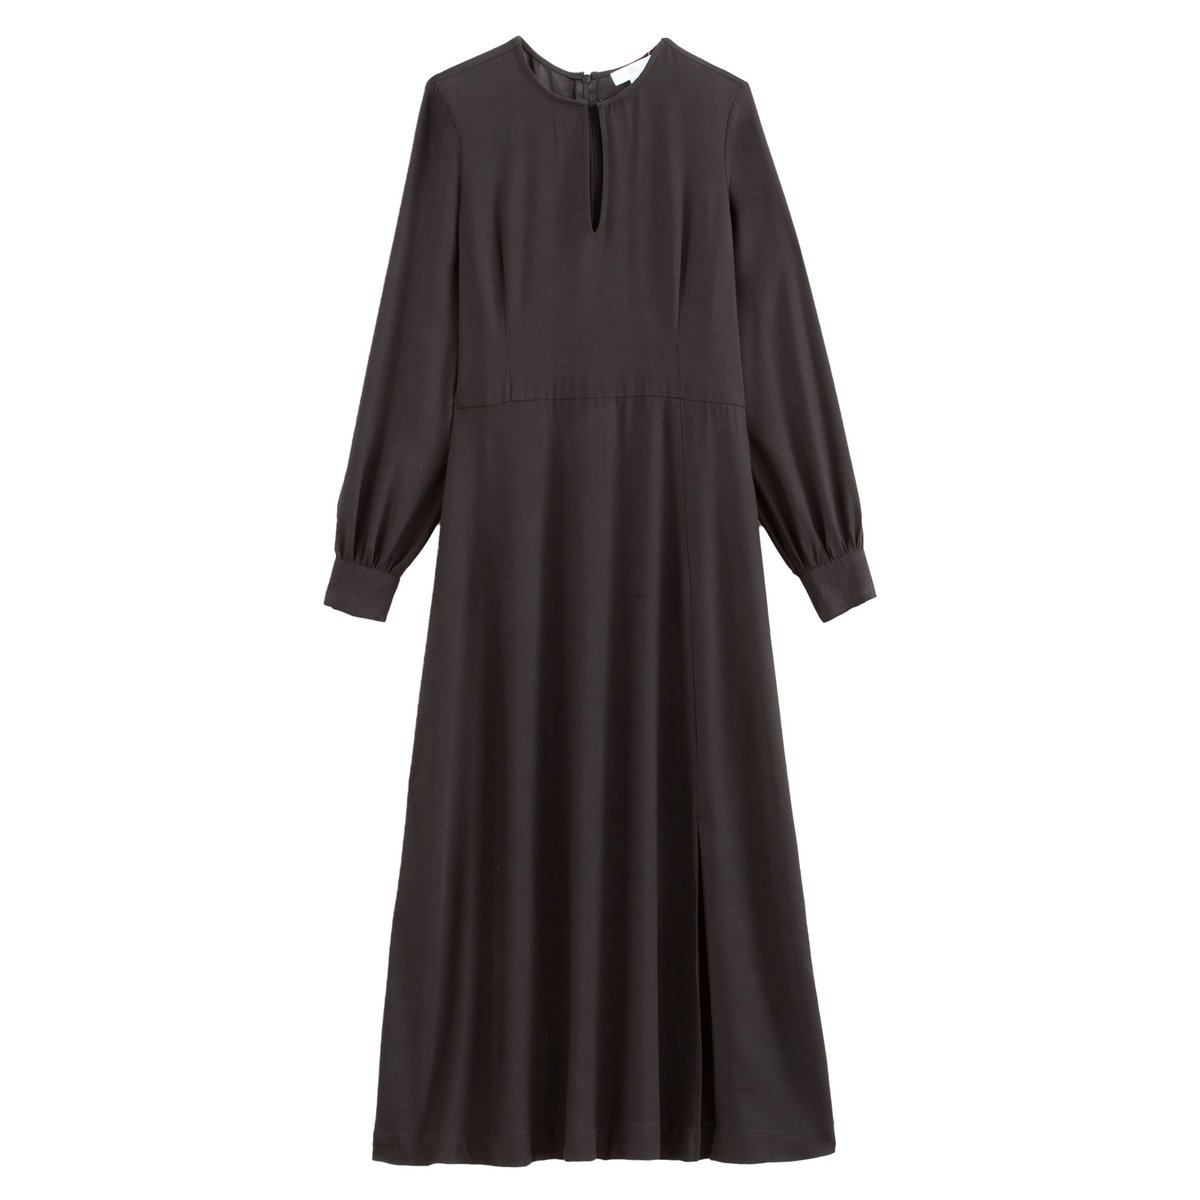 Платье La Redoute Макси с длинными рукавами 34 (FR) - 40 (RUS) черный, размер 34 (FR) - 40 (RUS) Макси с длинными рукавами 34 (FR) - 40 (RUS) черный - фото 5